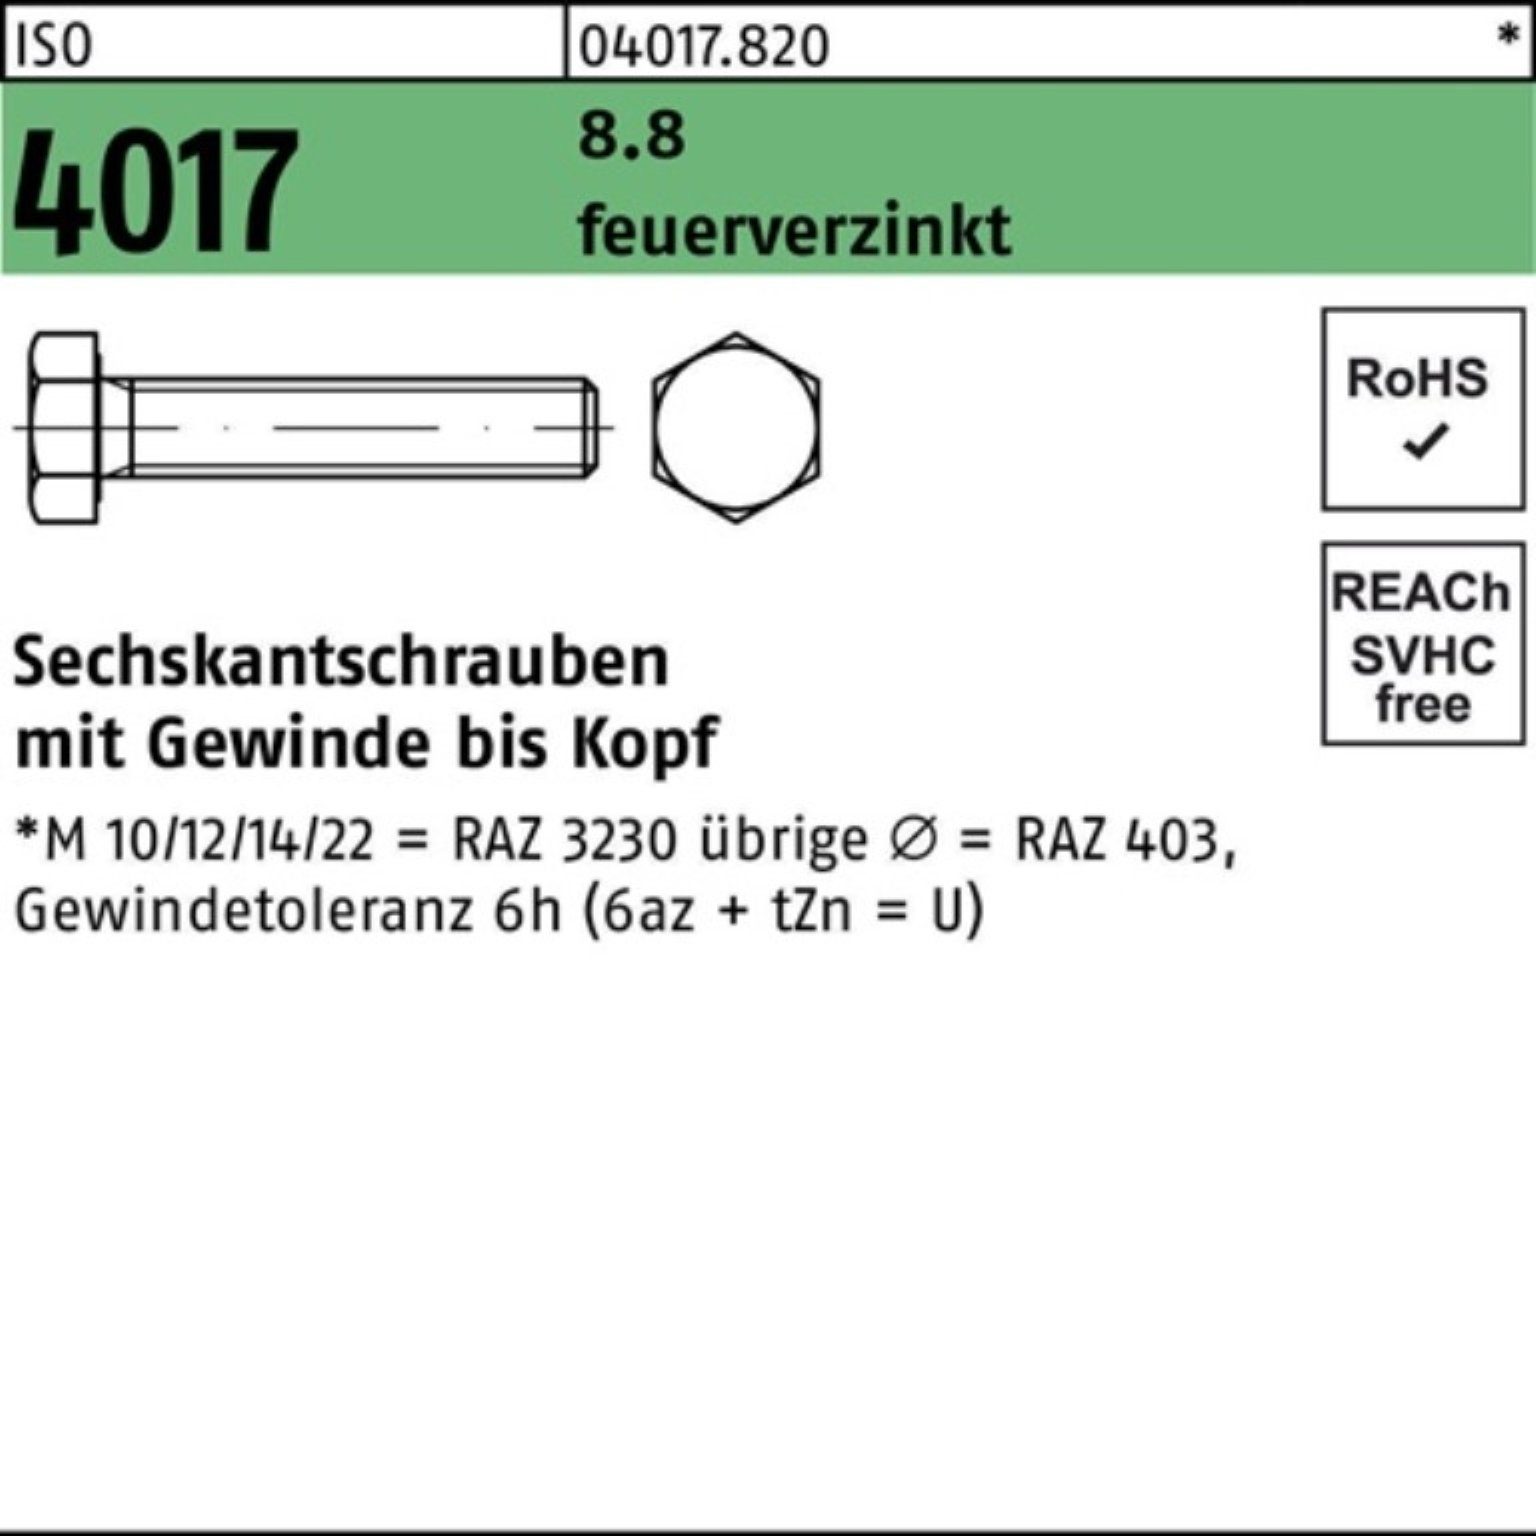 Bufab Sechskantschraube 100er Pack 25 4017 50 feuerverz. Sechskantschraube M24x ISO 8.8 VG St